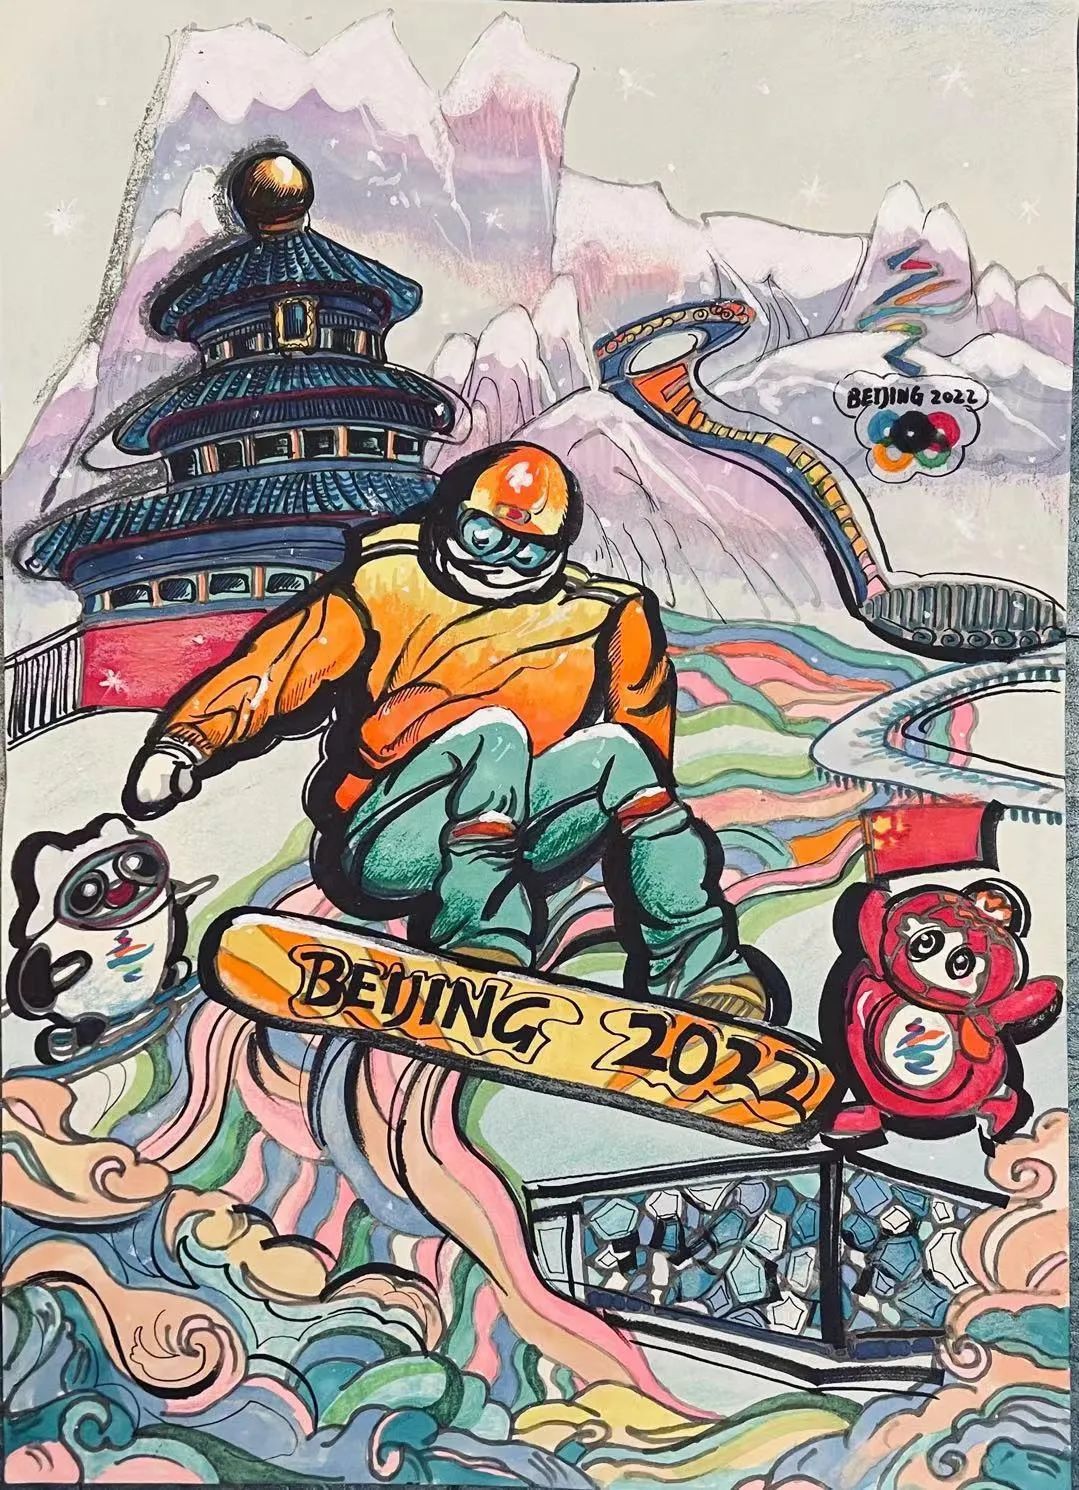 “助力北京2022年冬奥会”绘画比赛名次揭晓 – NZACNET